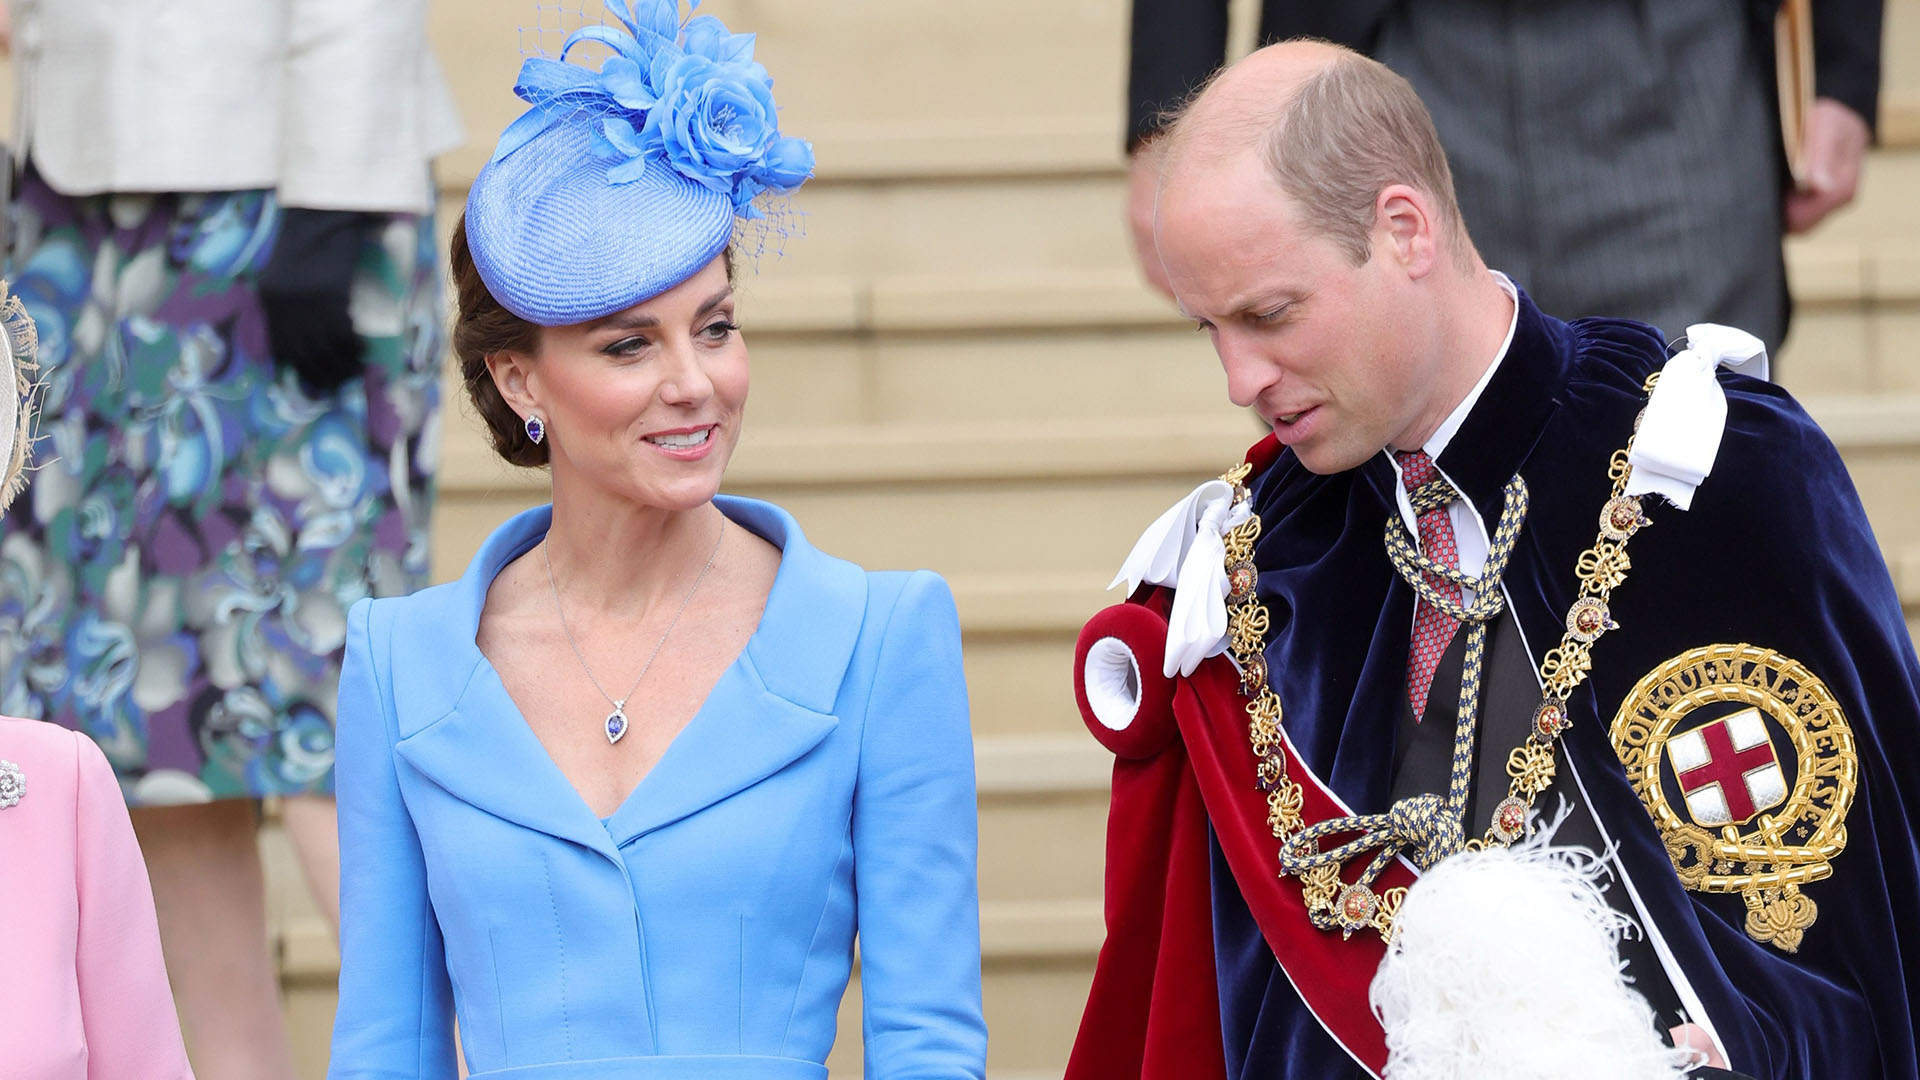 Los duques de Cambridge abandonan Londres: todos los detalles de su nueva residencia